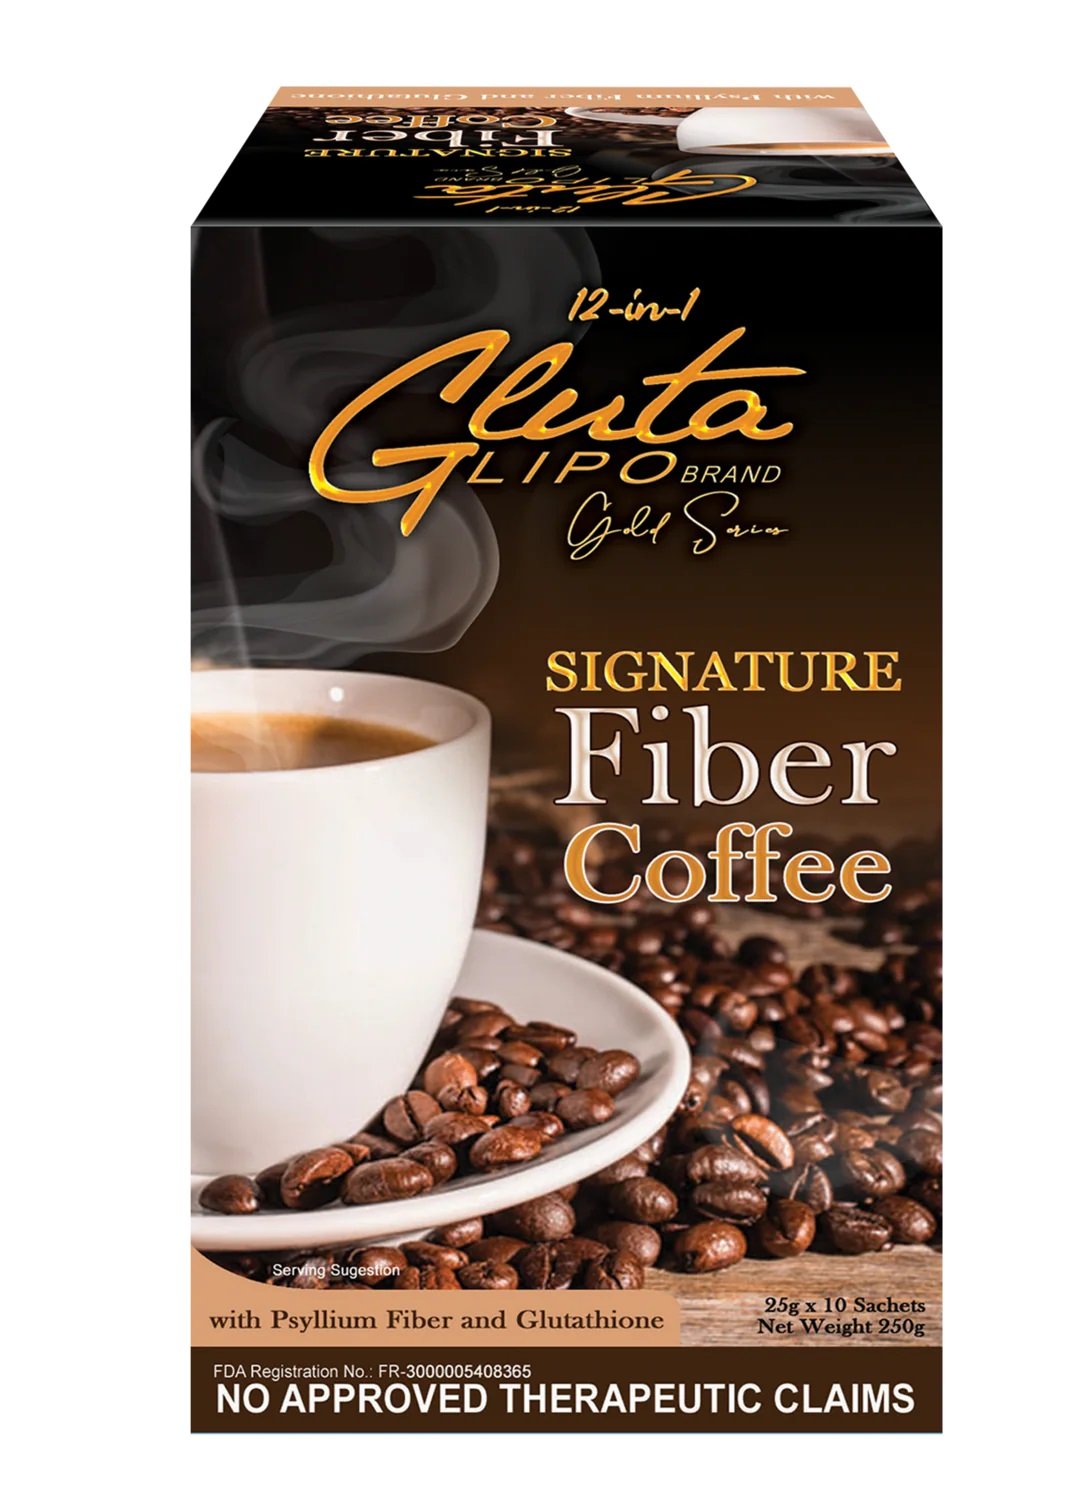 Gluta Lipo Signature Fiber Slimming Coffee